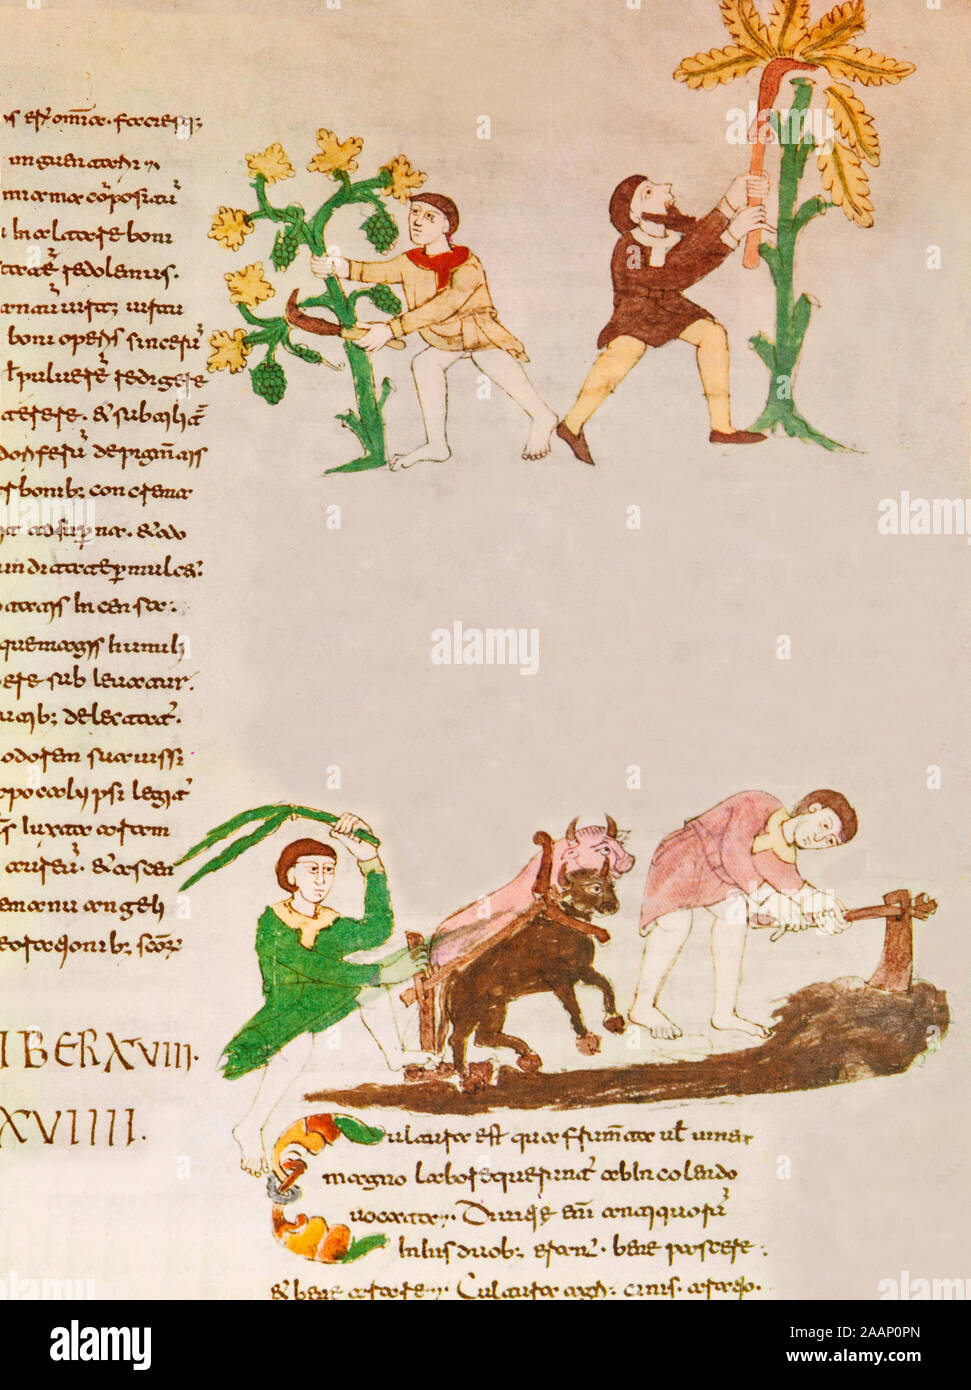 Les agriculteurs au travail à partir d'un manuscrit médiéval minature trouvé dans le monastère bénédictin de Monte Casino, Italie. Banque D'Images